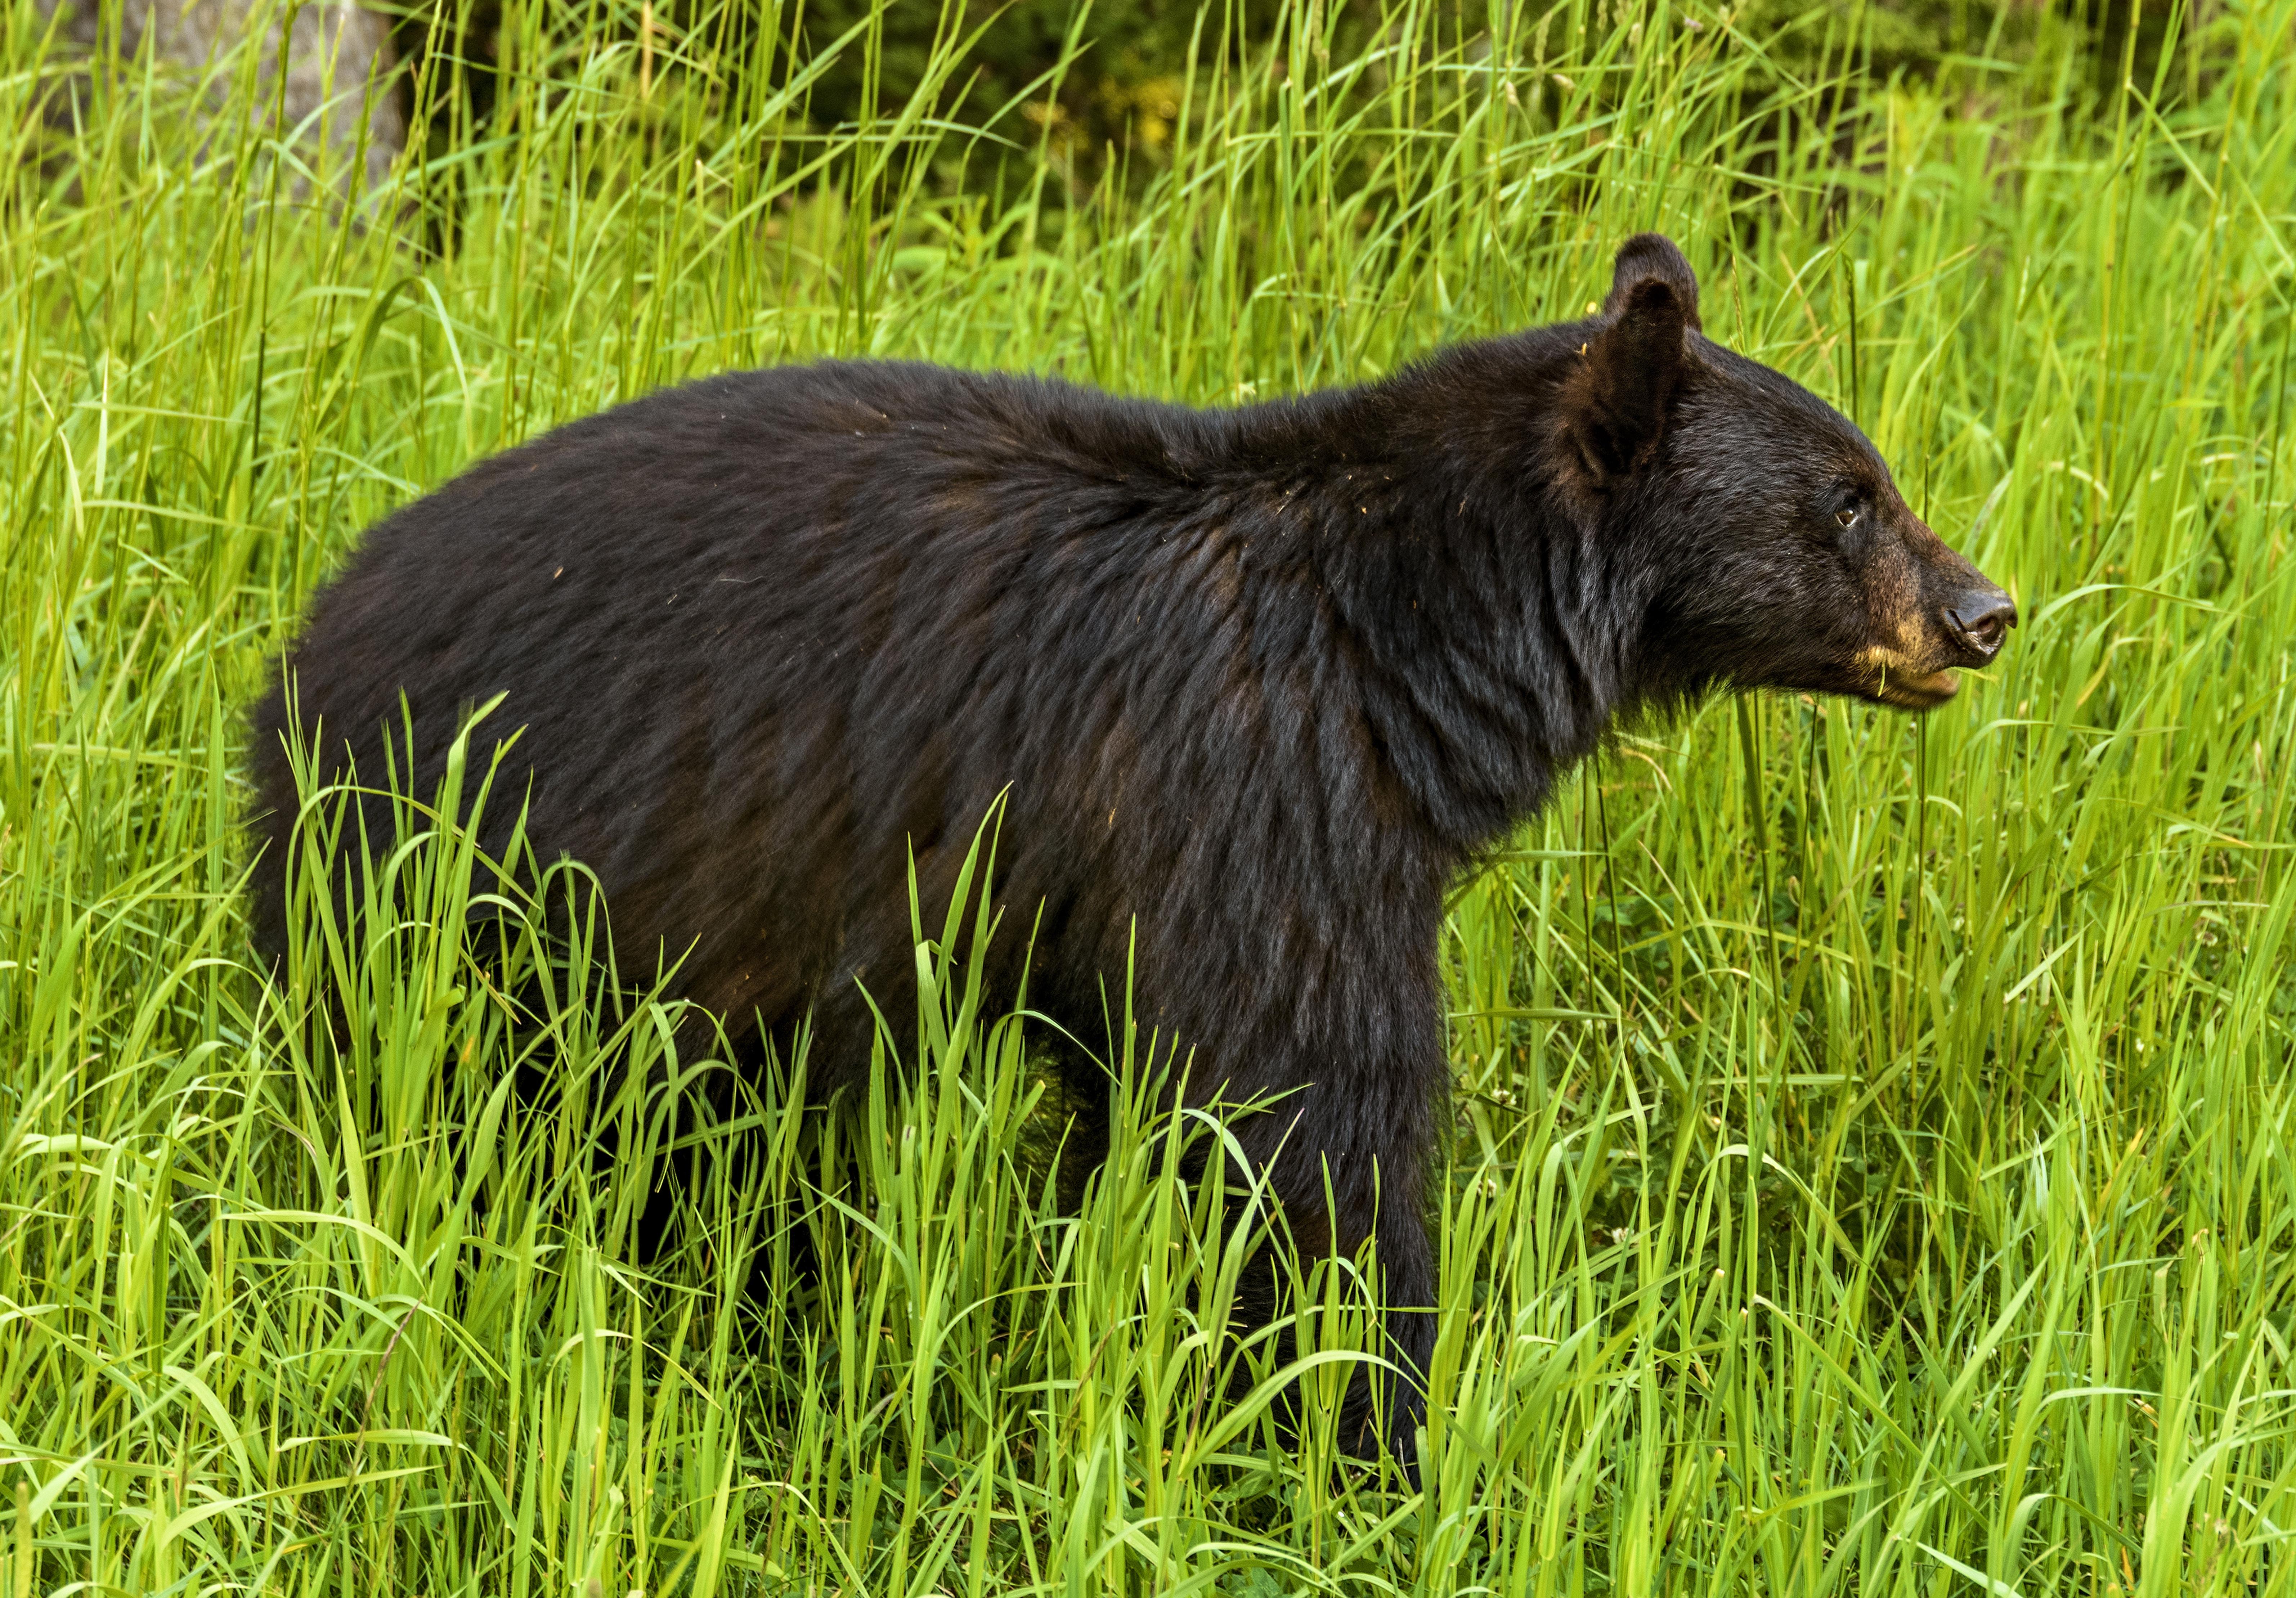 Black bear (Photo: Adam Cegledi, Shutterstock.com)